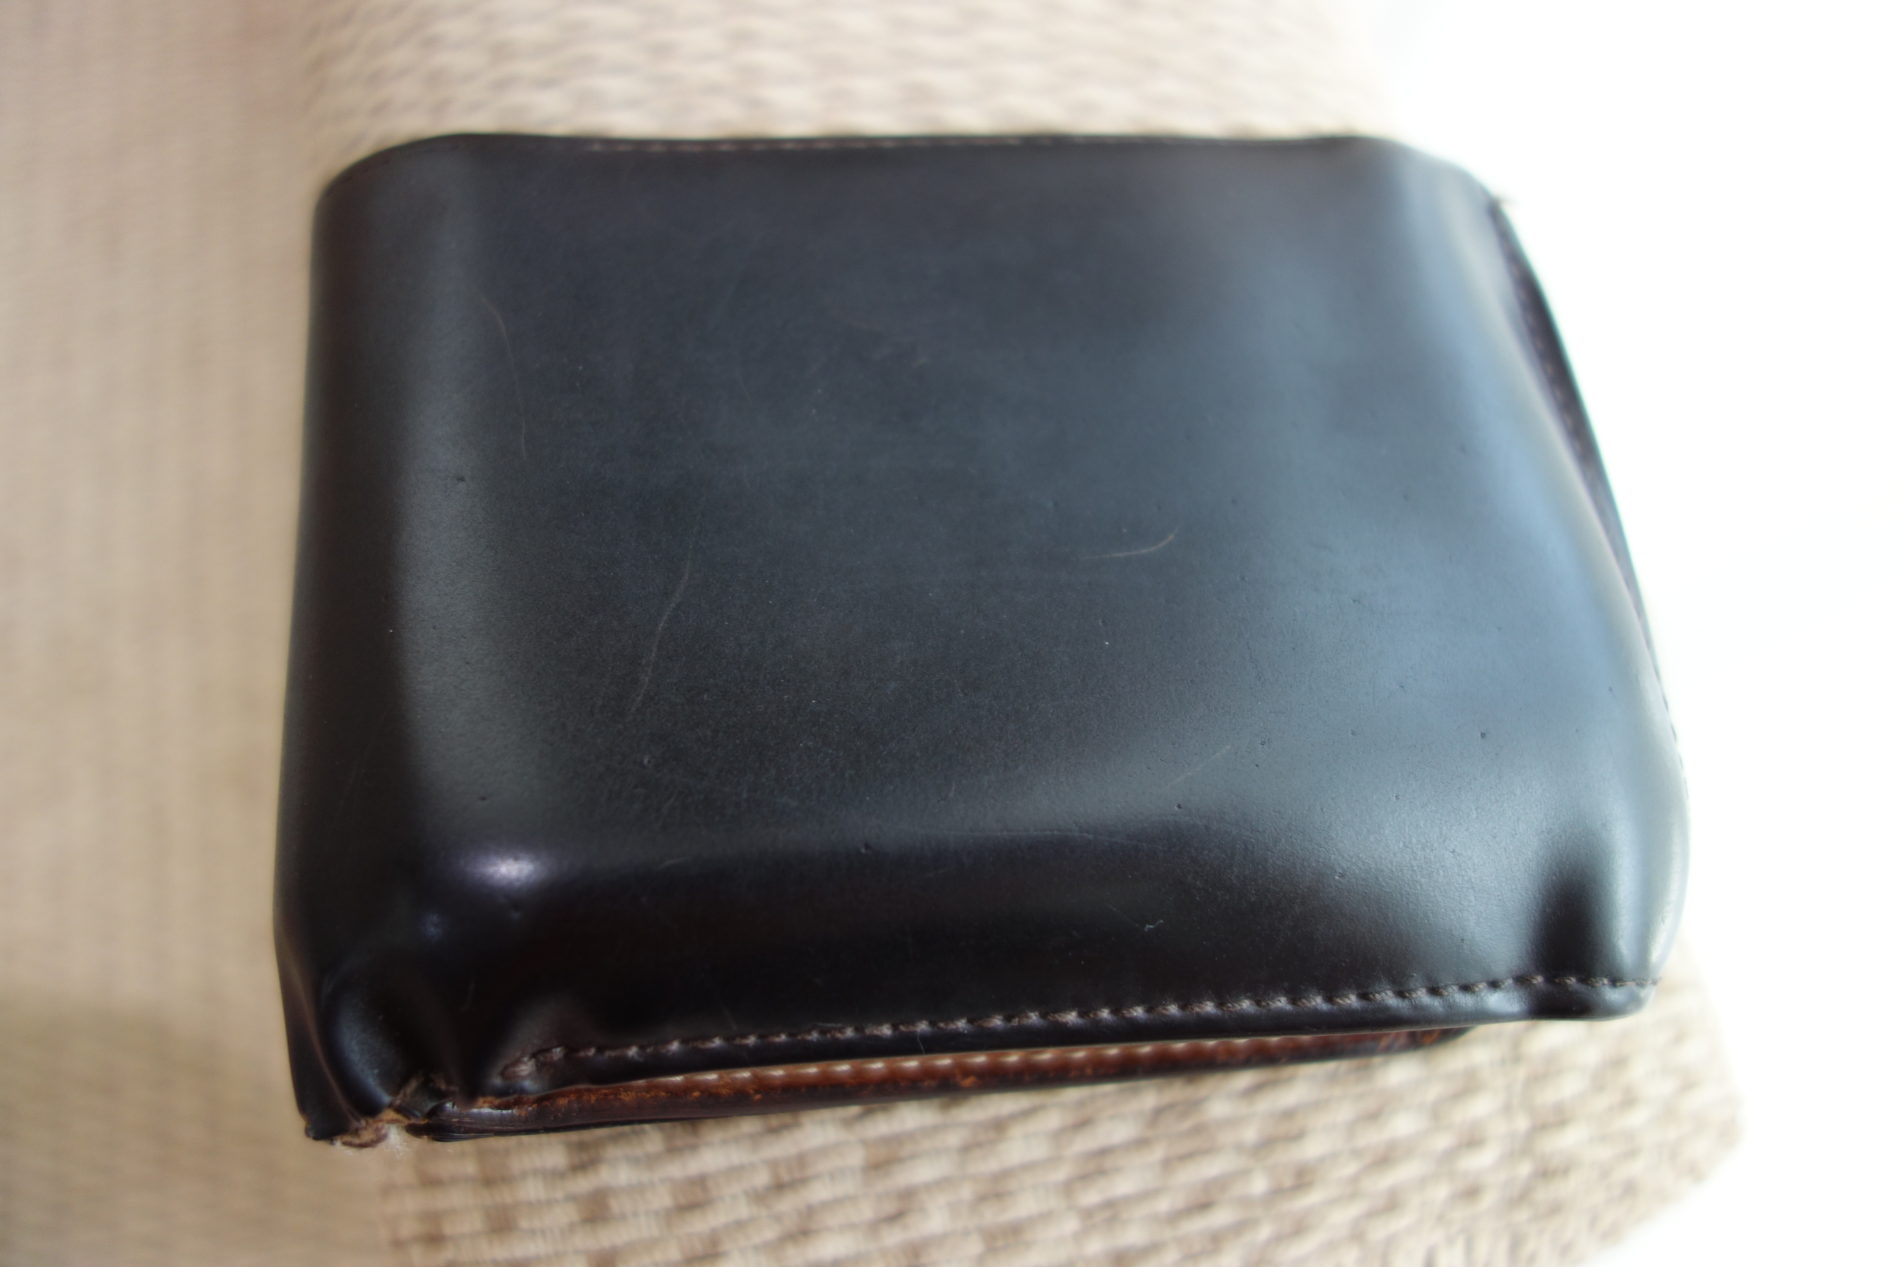 GANZO,2つ折り財布,コードバン,16年,エイジング